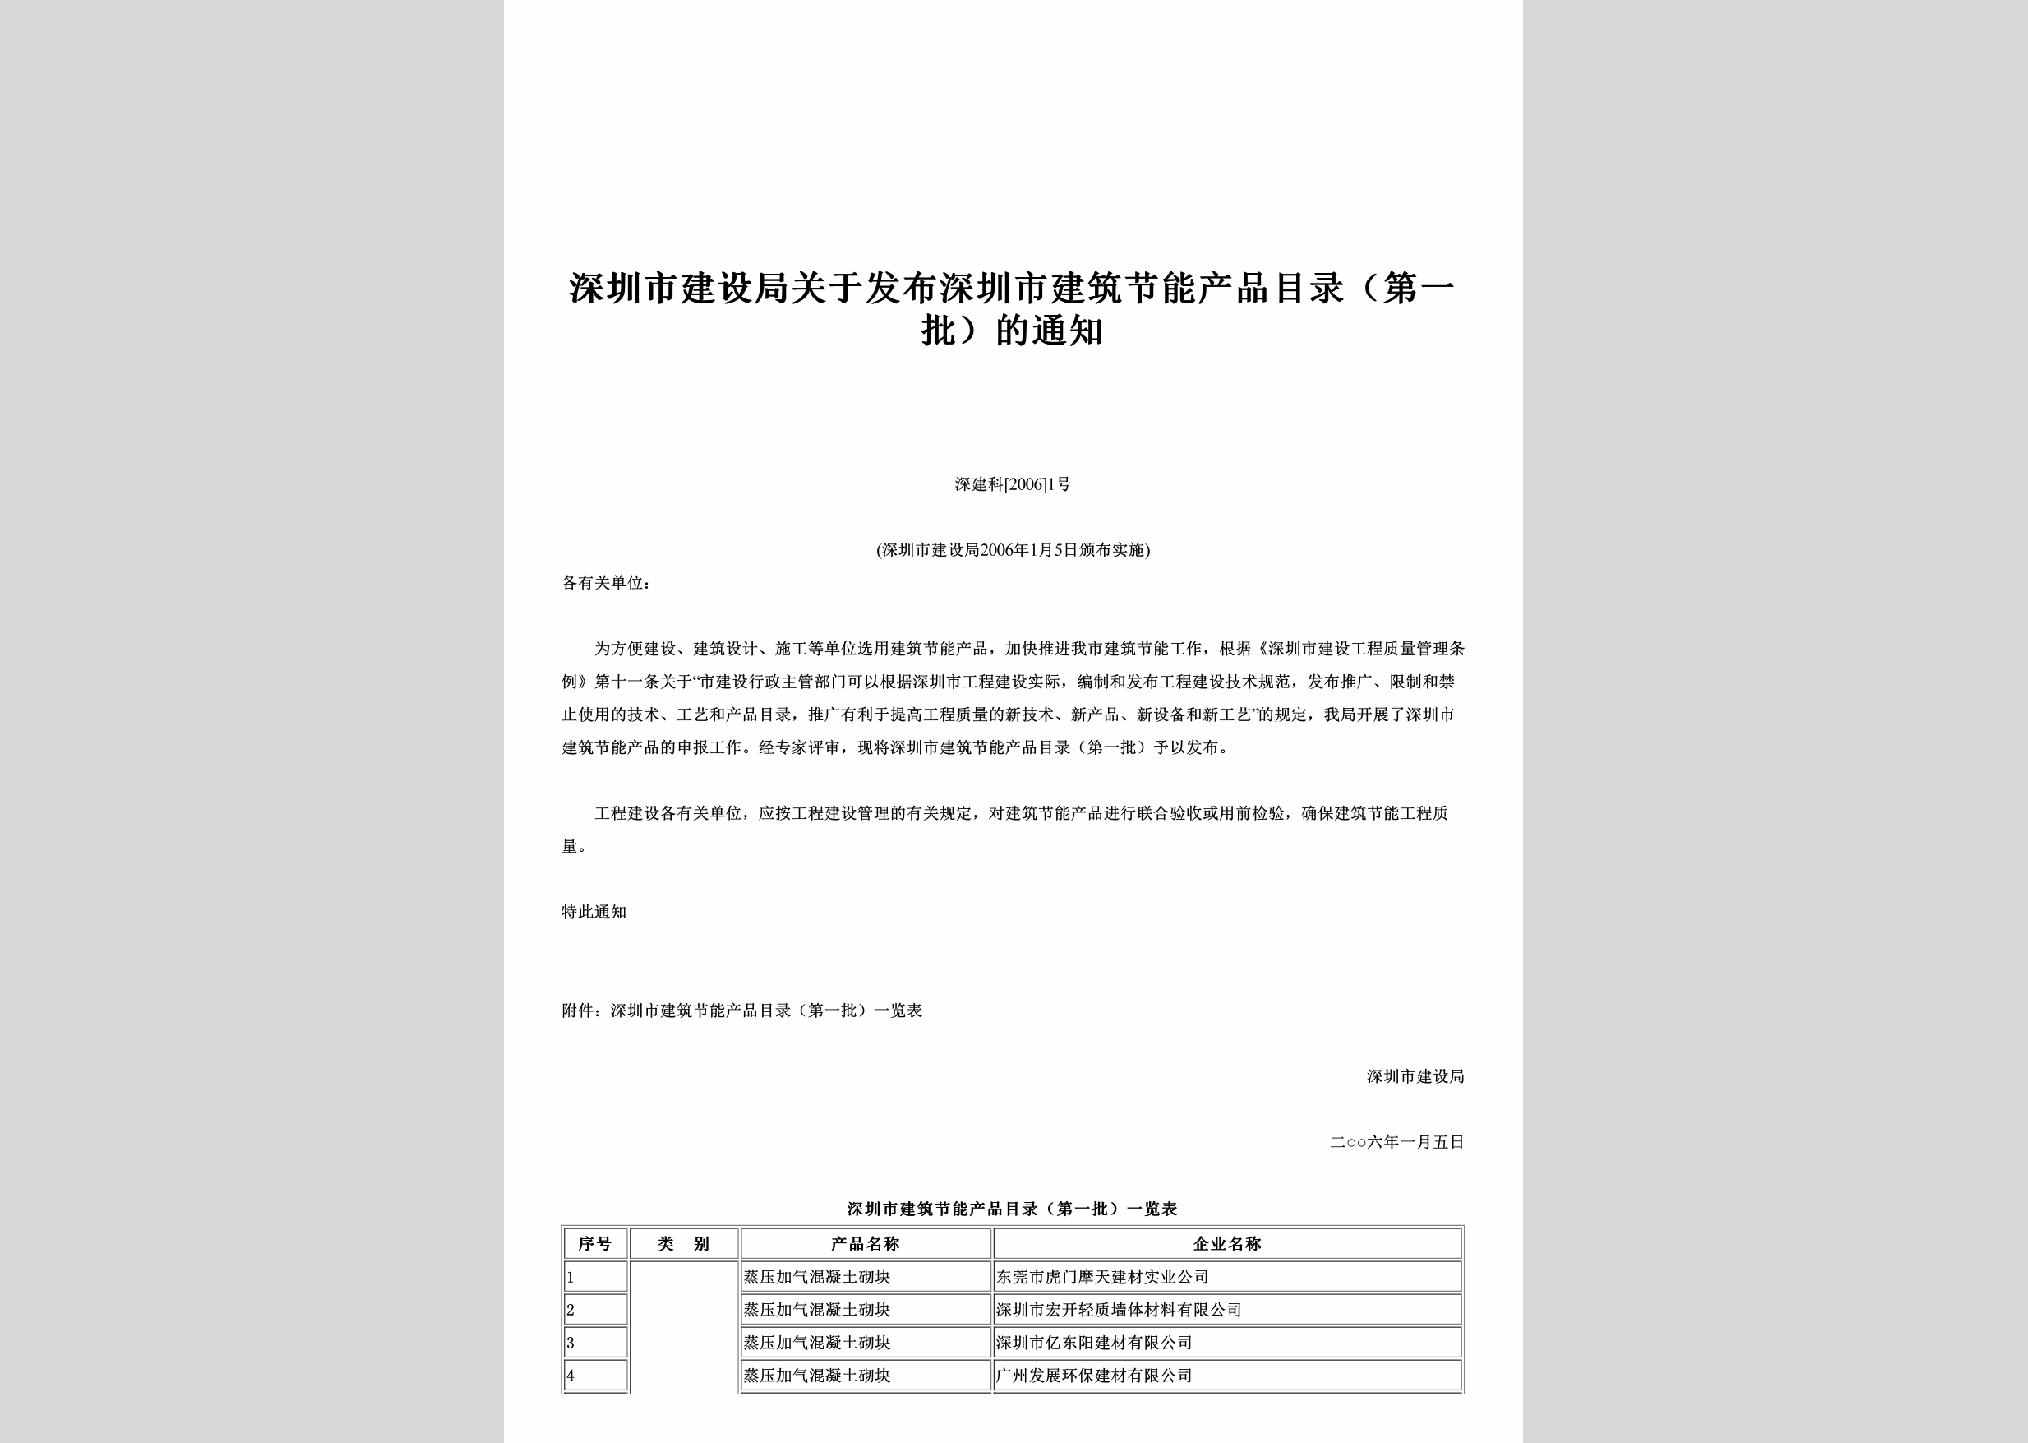 深建科[2006]1号：关于发布深圳市建筑节能产品目录（第一批）的通知